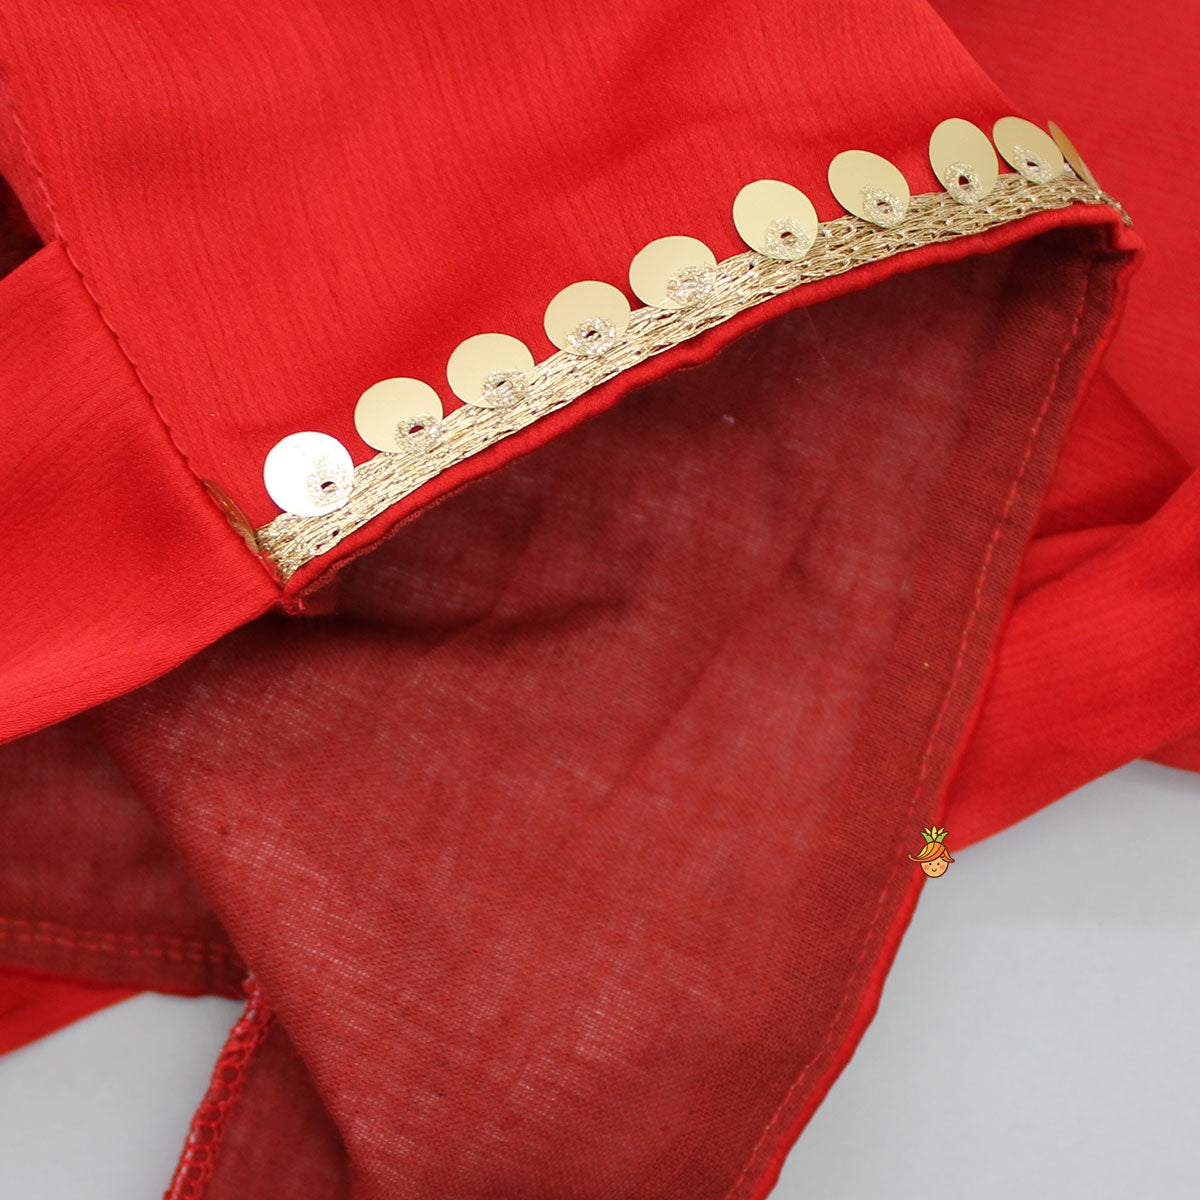 Frilly Sleeves V Neck Red Layered Drape Top And Stylish Lehenga